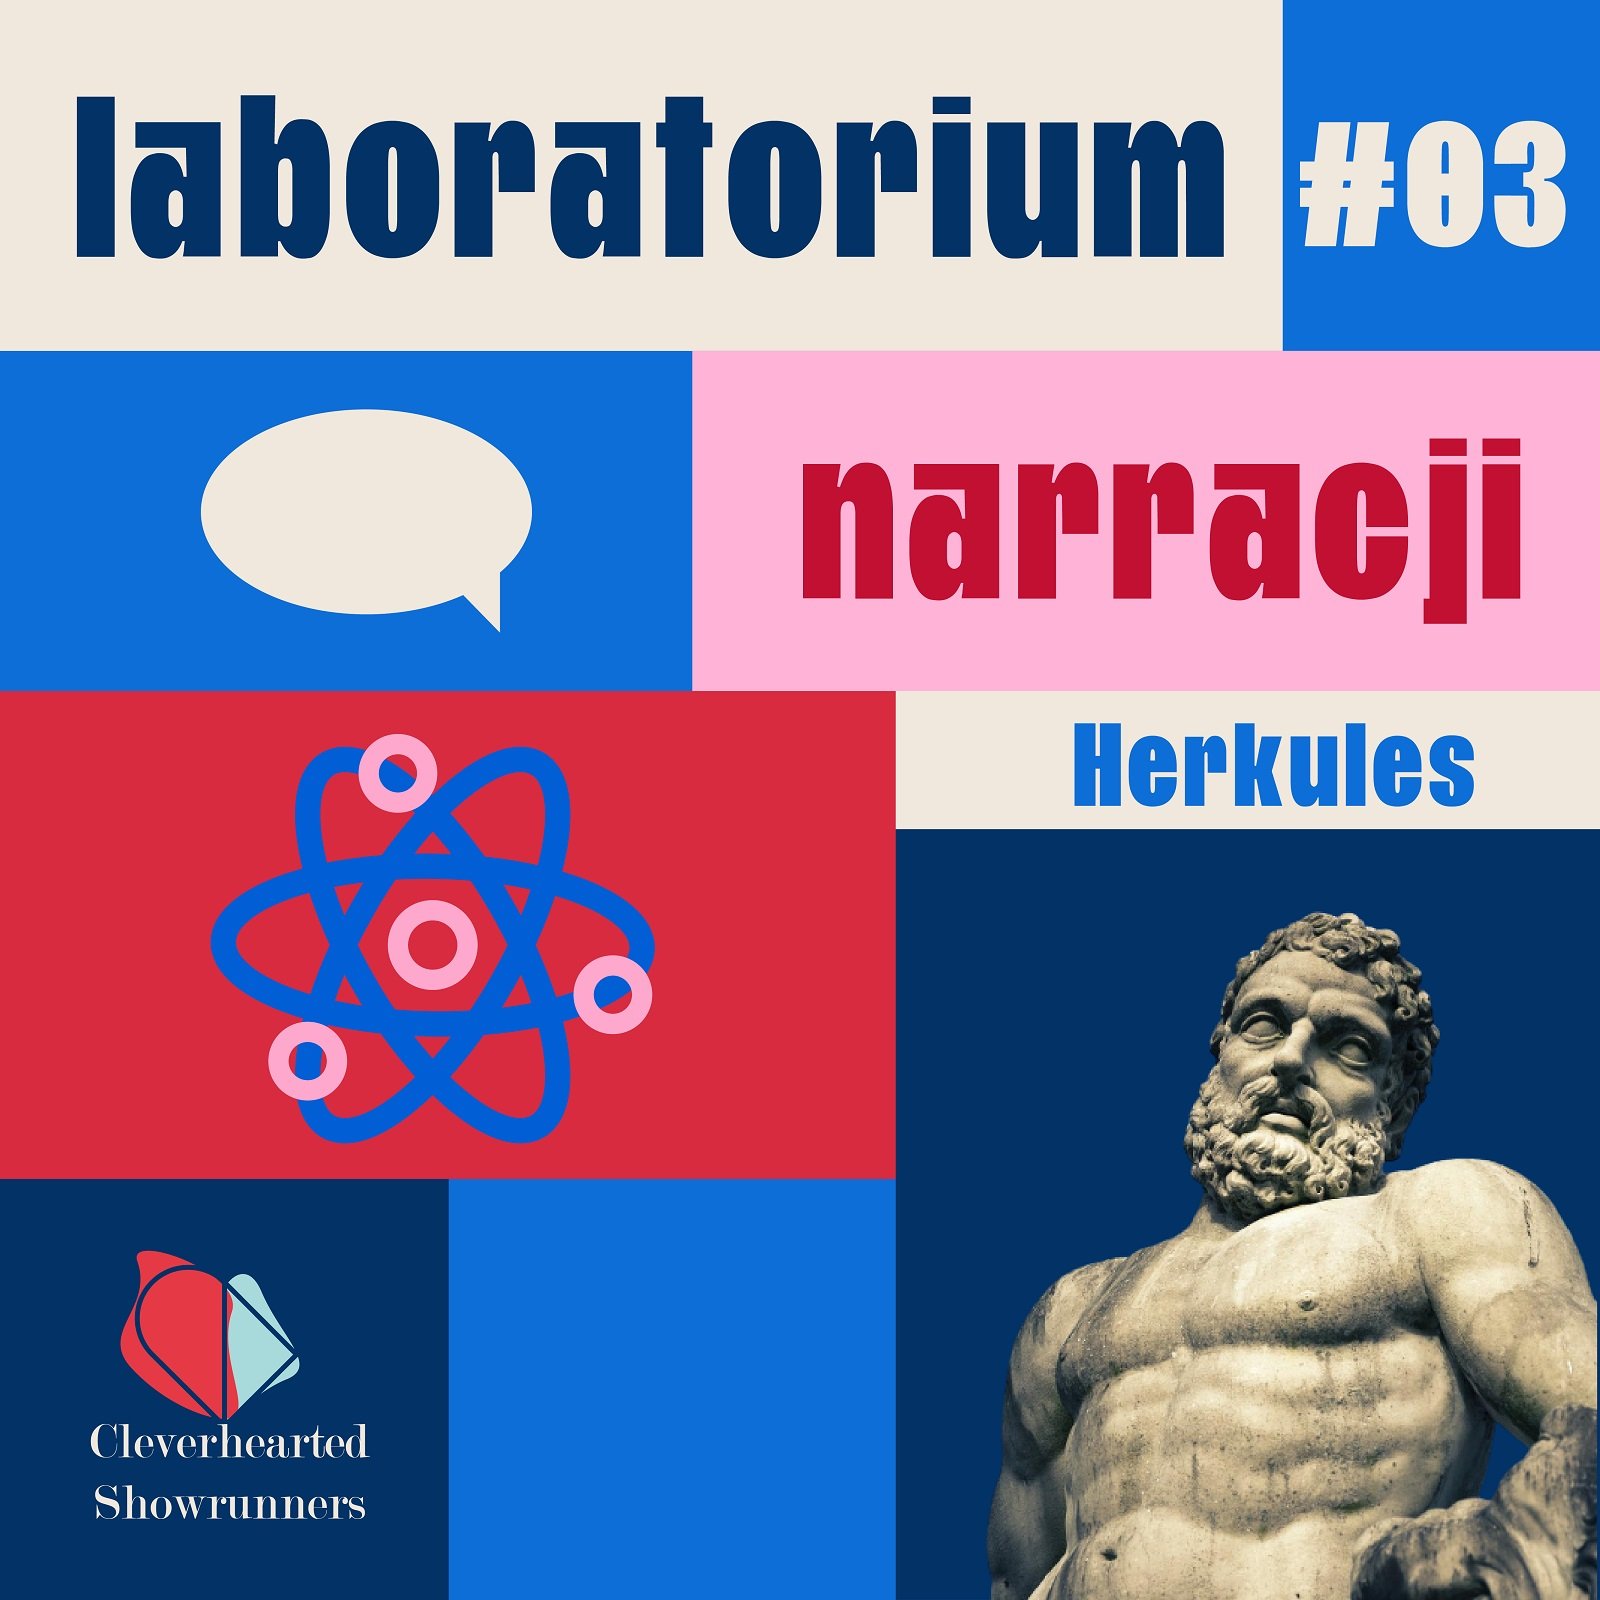 Podcast prowadzony przez Herkulesa jako przykład zastosowania archetypu marki